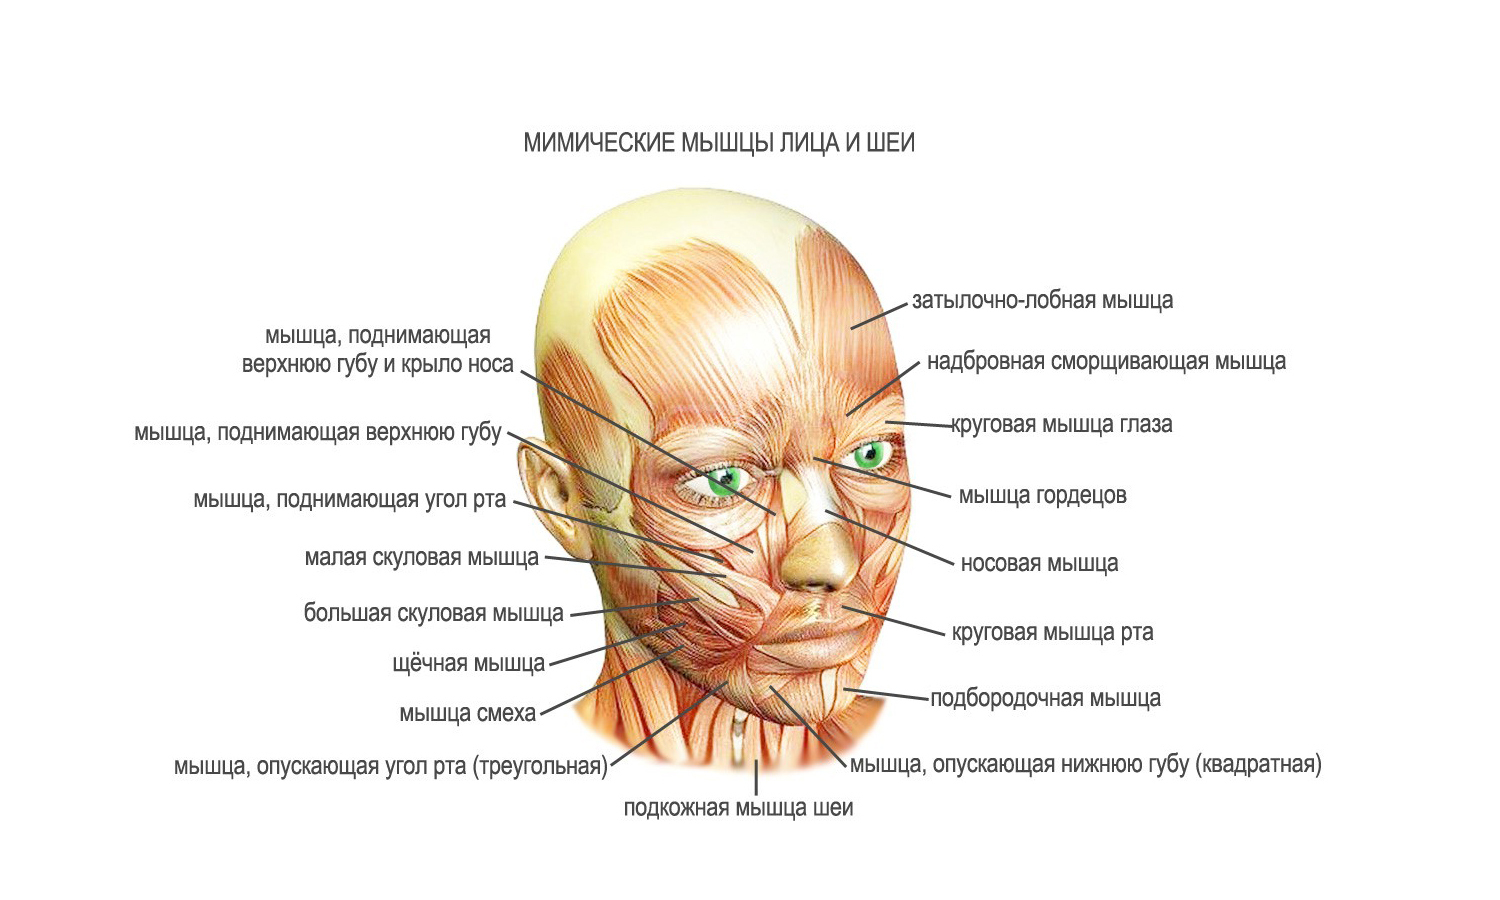 Нервы на лбу. Мышцы лица анатомия для косметологов для массажа. Мышцы лица и шеи анатомия для косметологов. Мимические мышцы лица и мышцы шеи анатомия. Мимические мышцы лица анатомия функции.